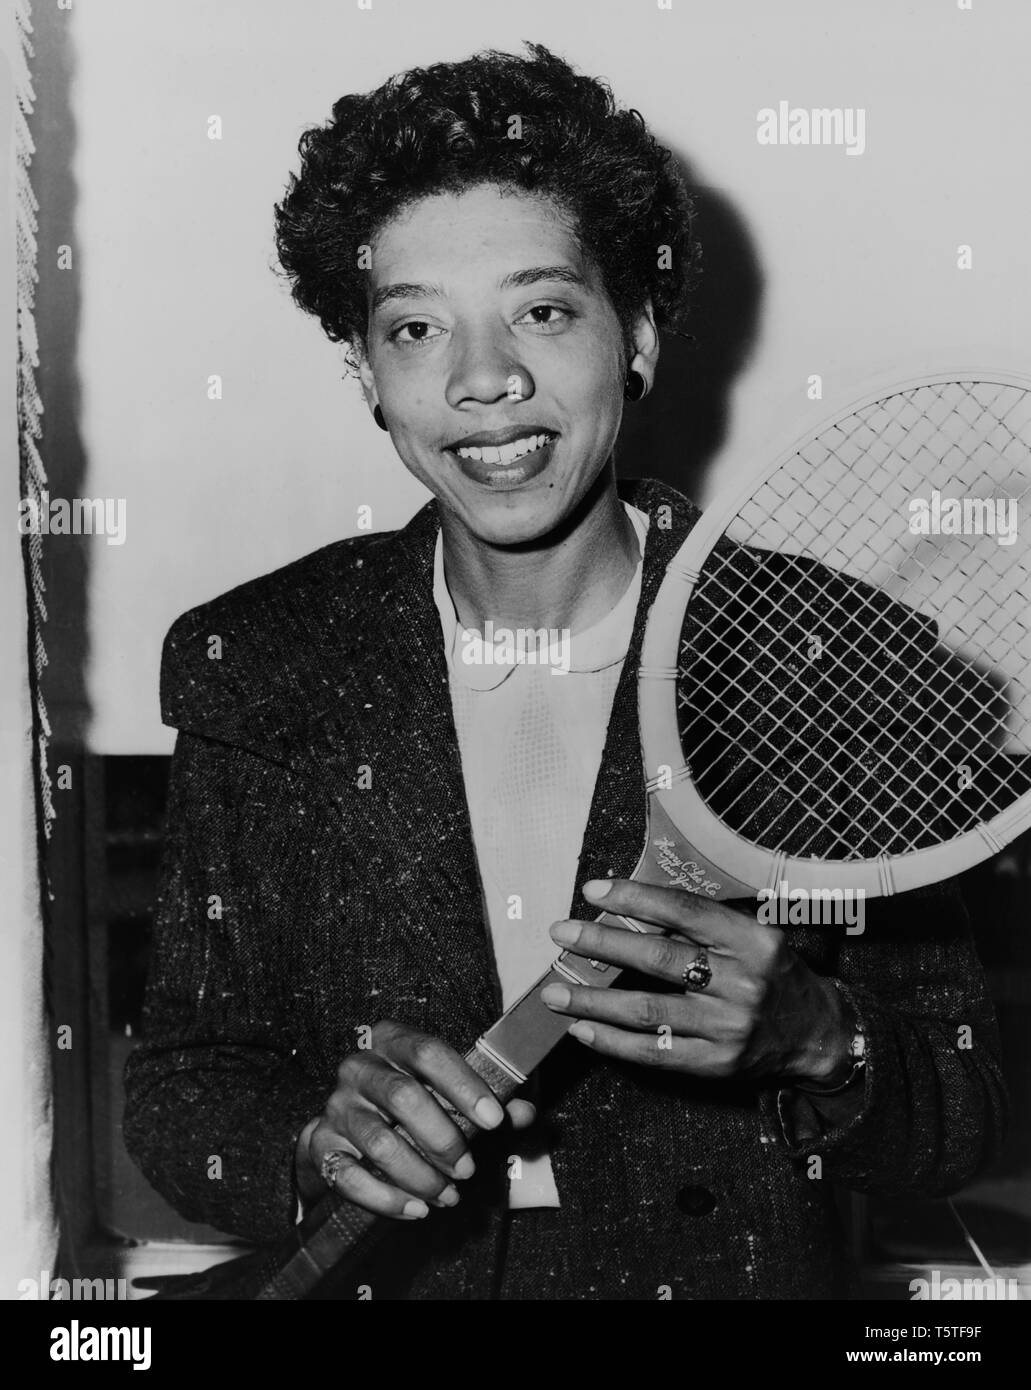 Althea Gibson, Afrikanische amerikanische Tennisspieler, Brustbild holding Tennis racquet, durch Fred Palumbo, New York World-Telegram und die Sonne Zeitung Foto Sammlung, 1956 Stockfoto